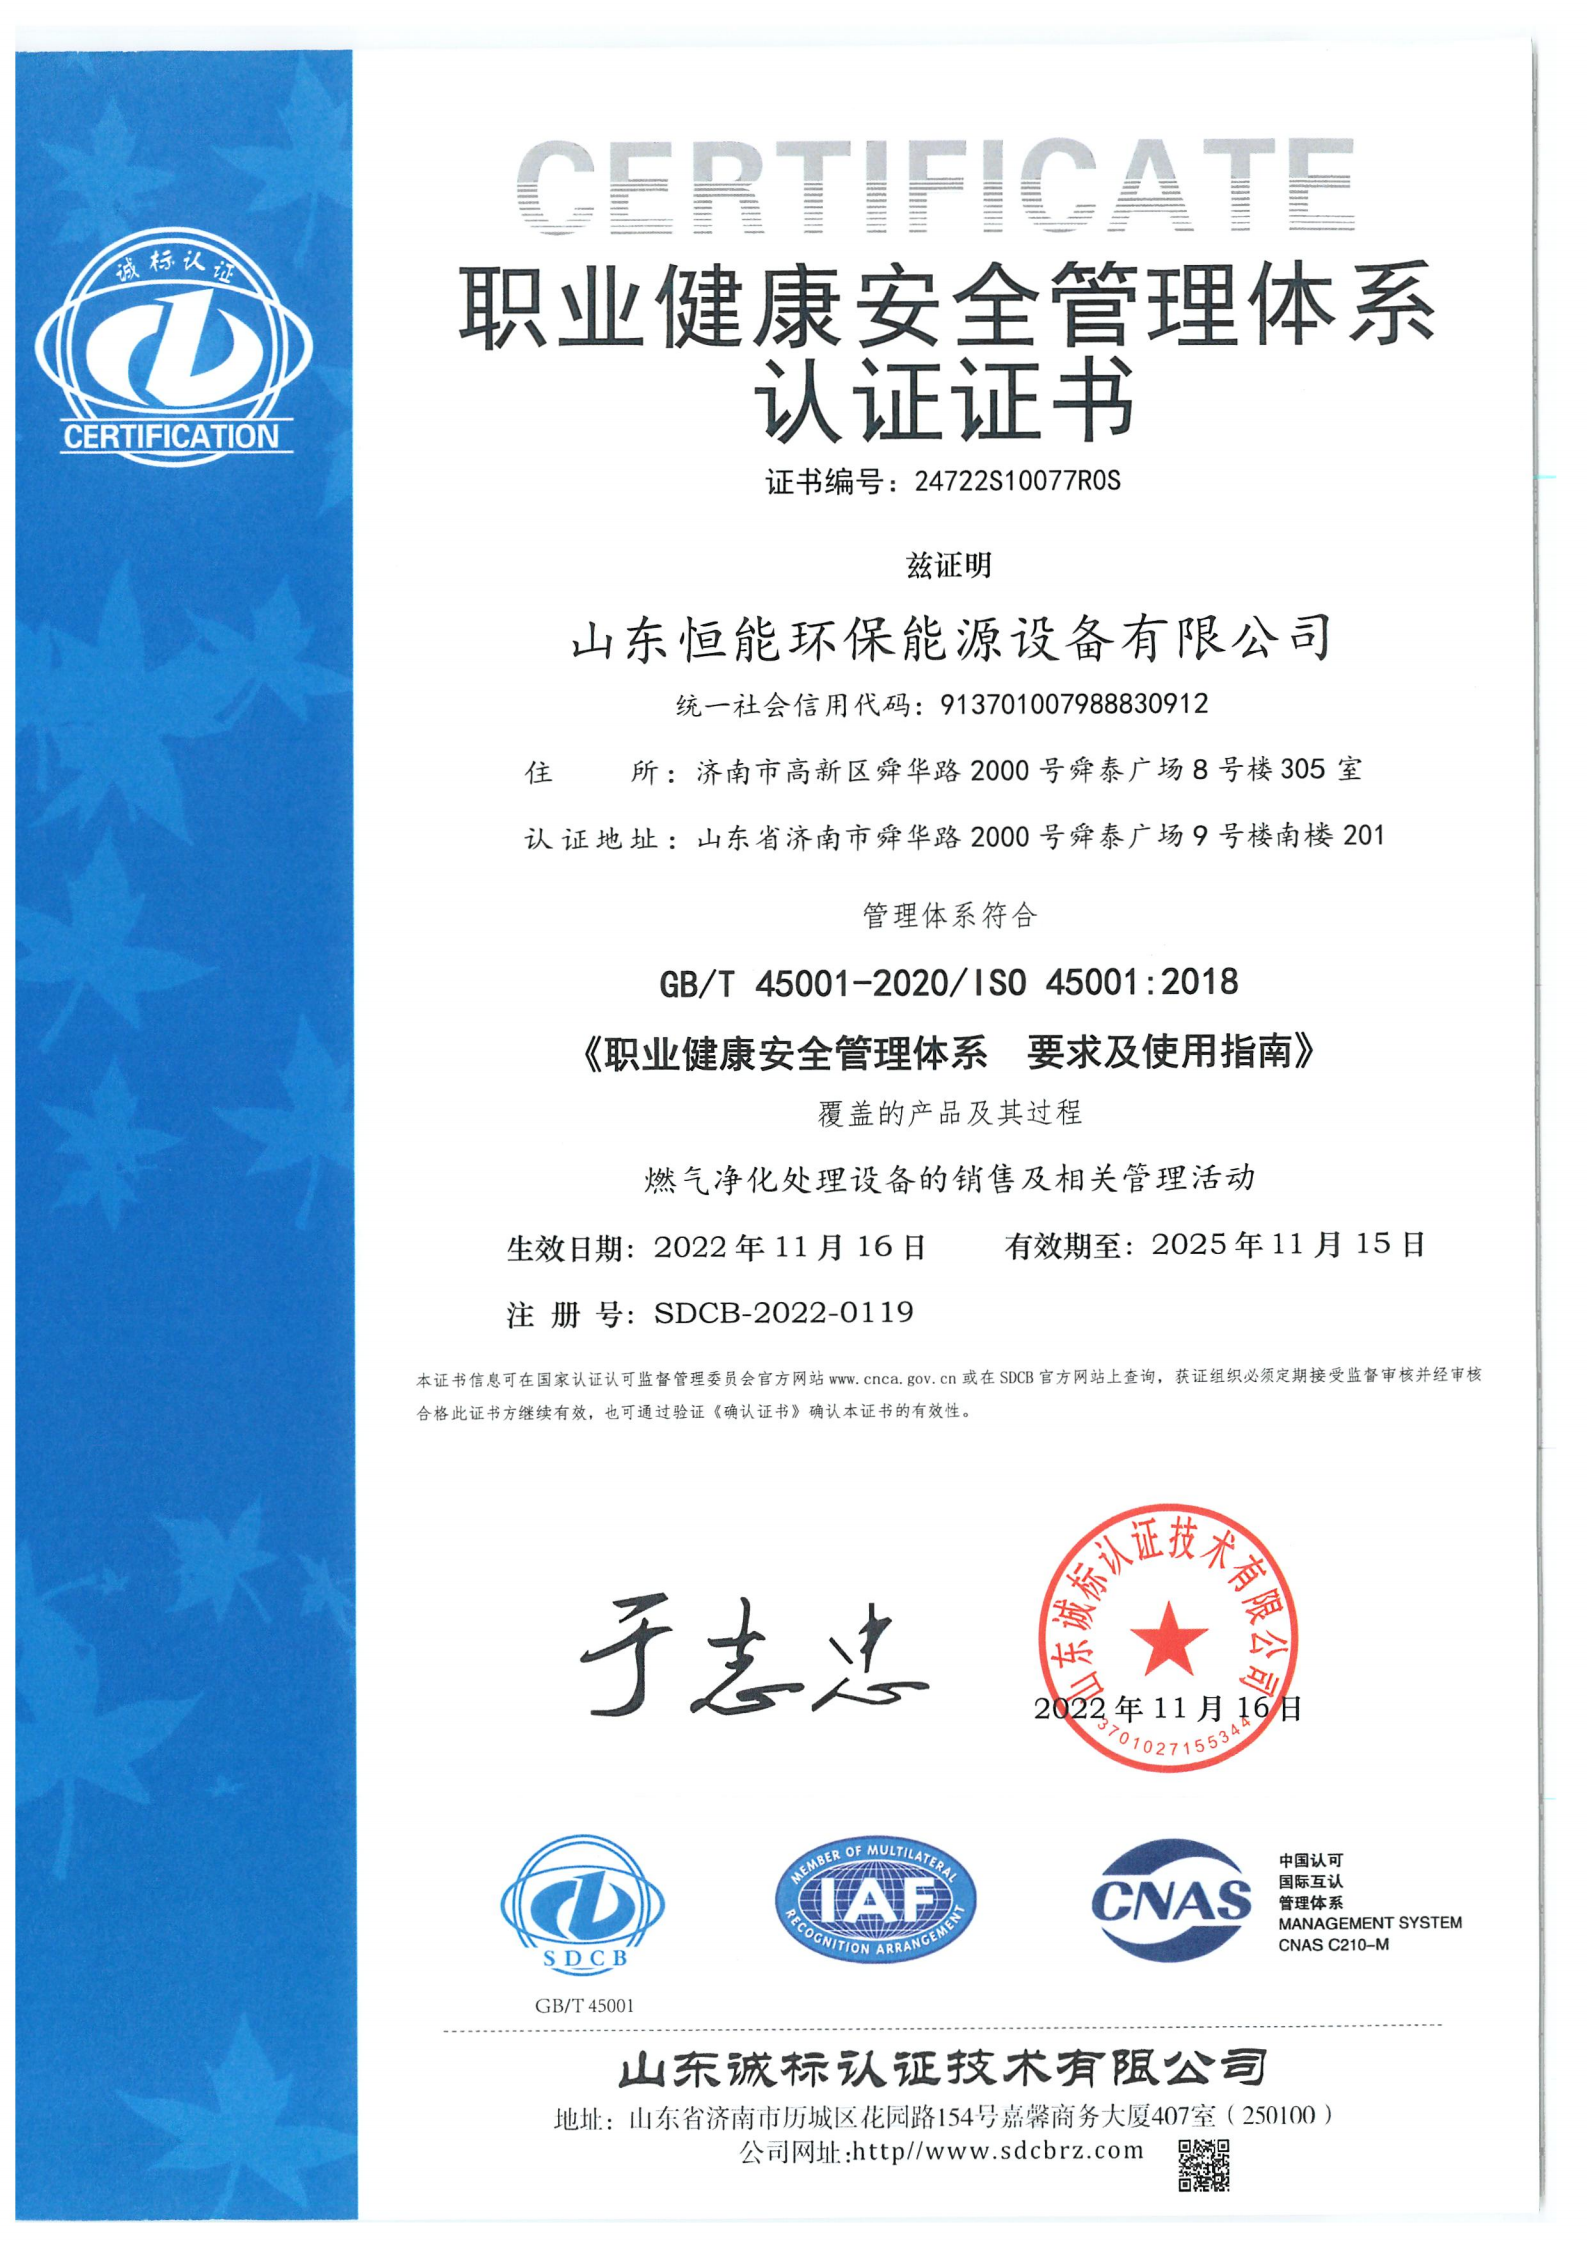 澳门37000威尼斯职业健康管理体系证书-中文_00